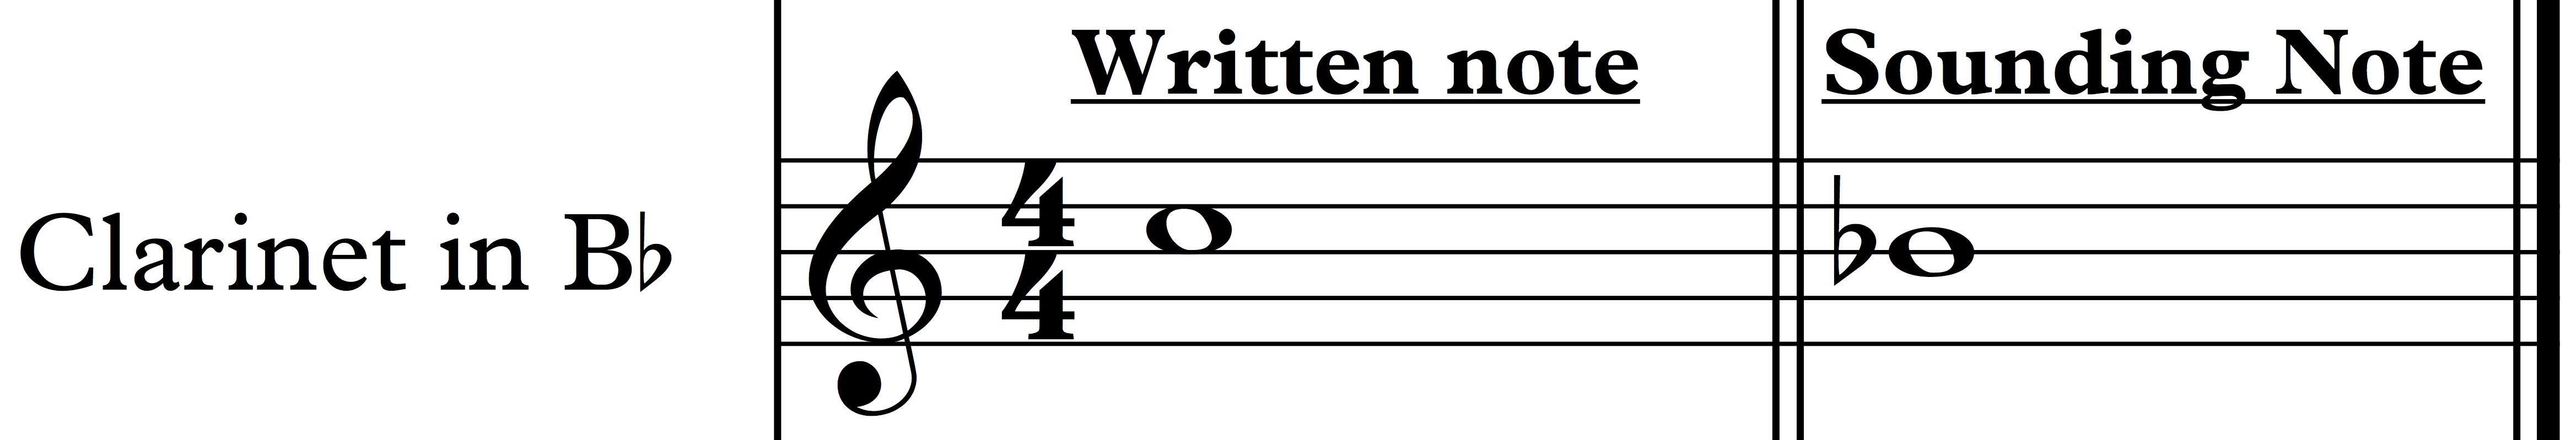 Alto Flute Transposition Chart